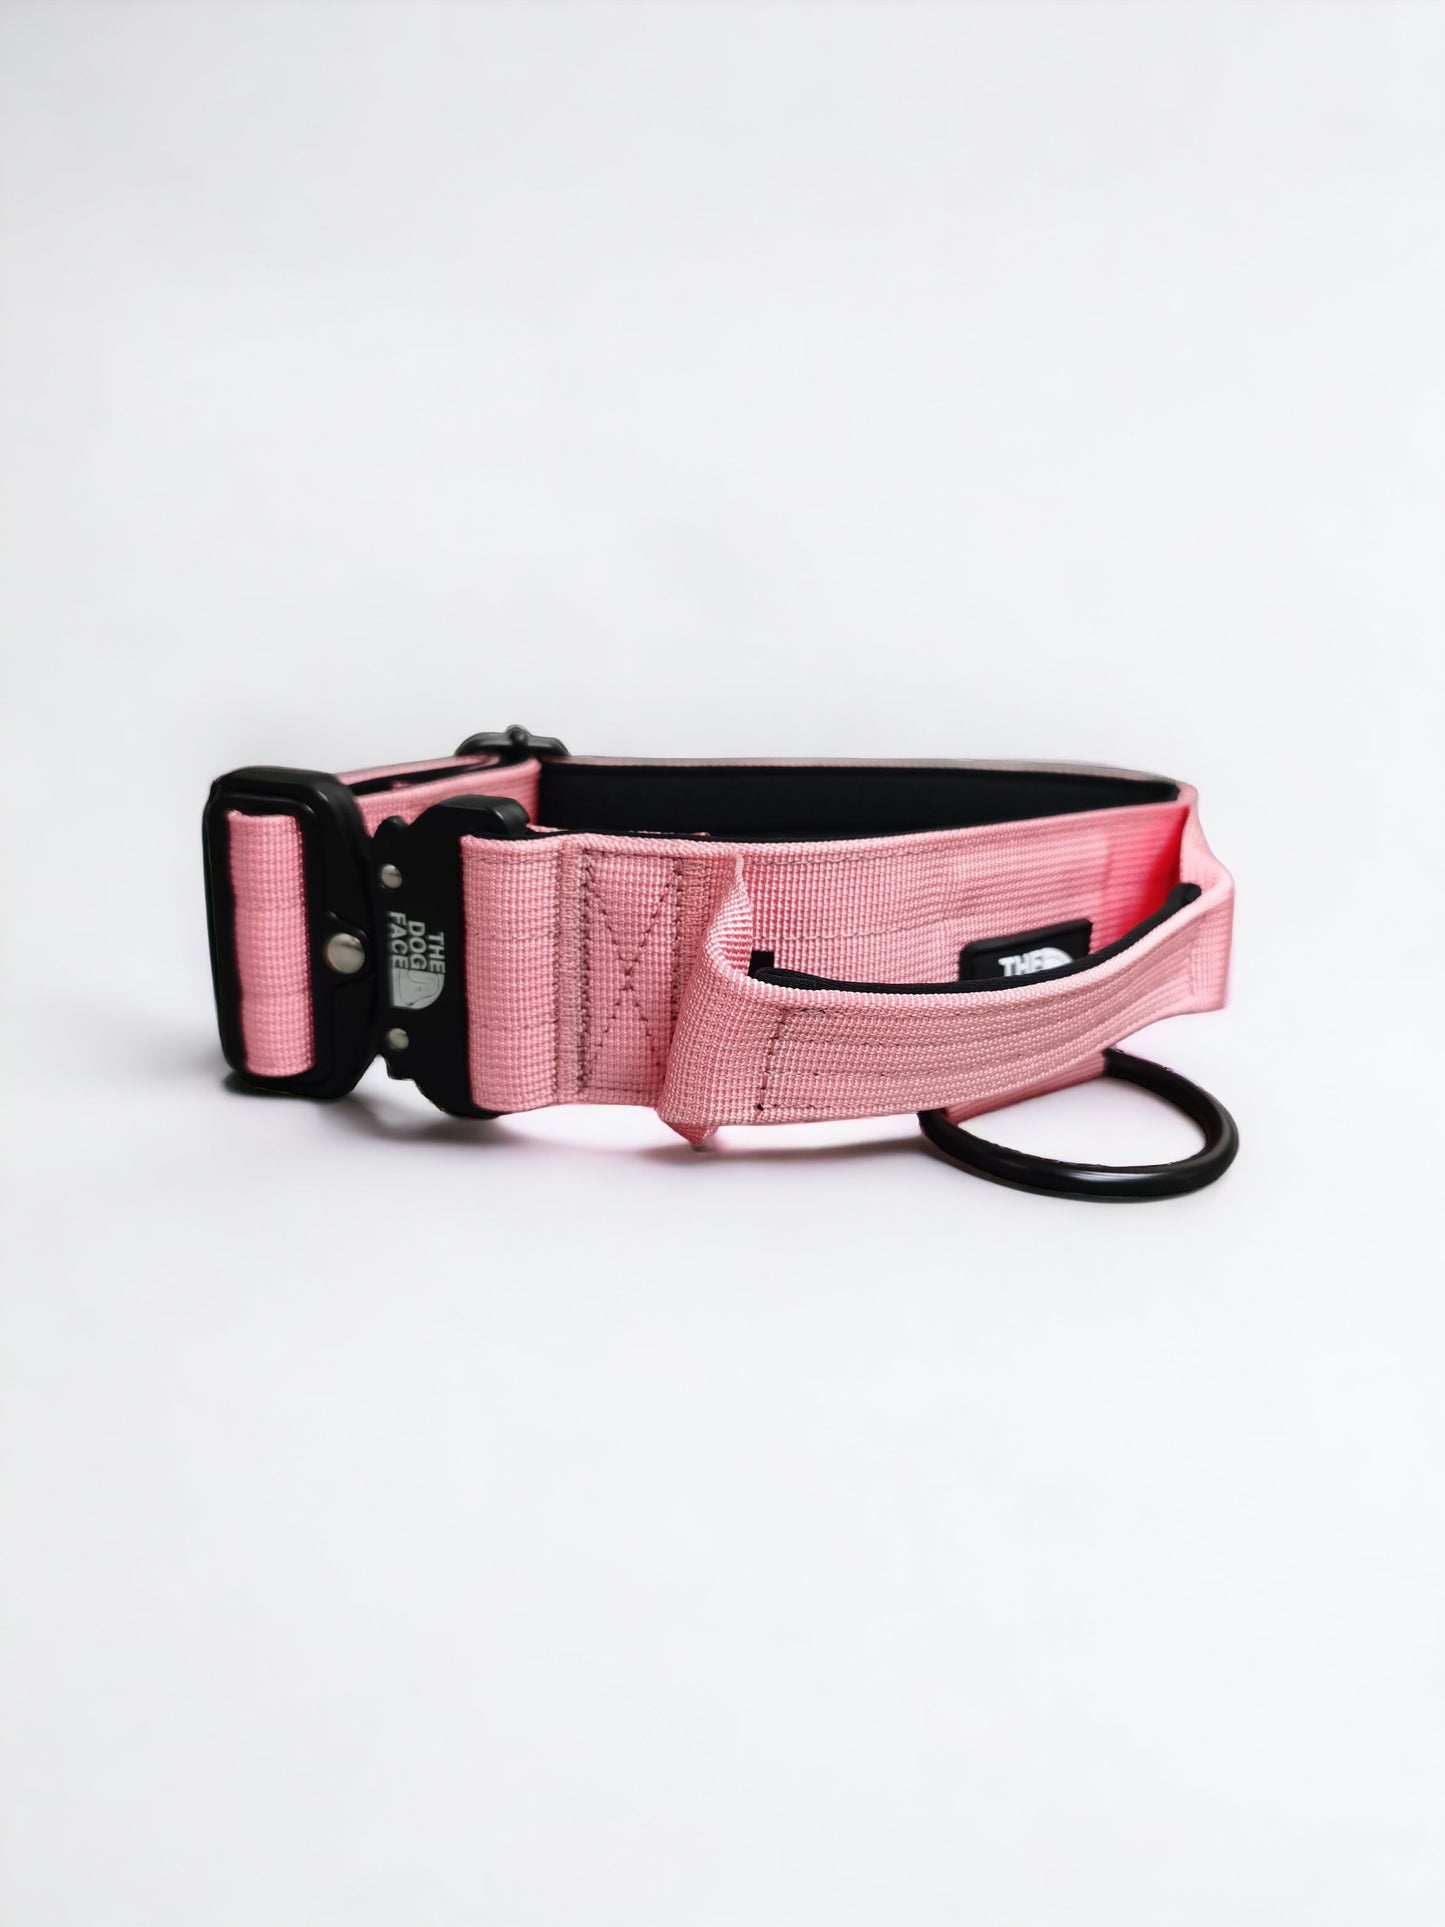 ‘Superior' Tactical Dog Collar - Pink